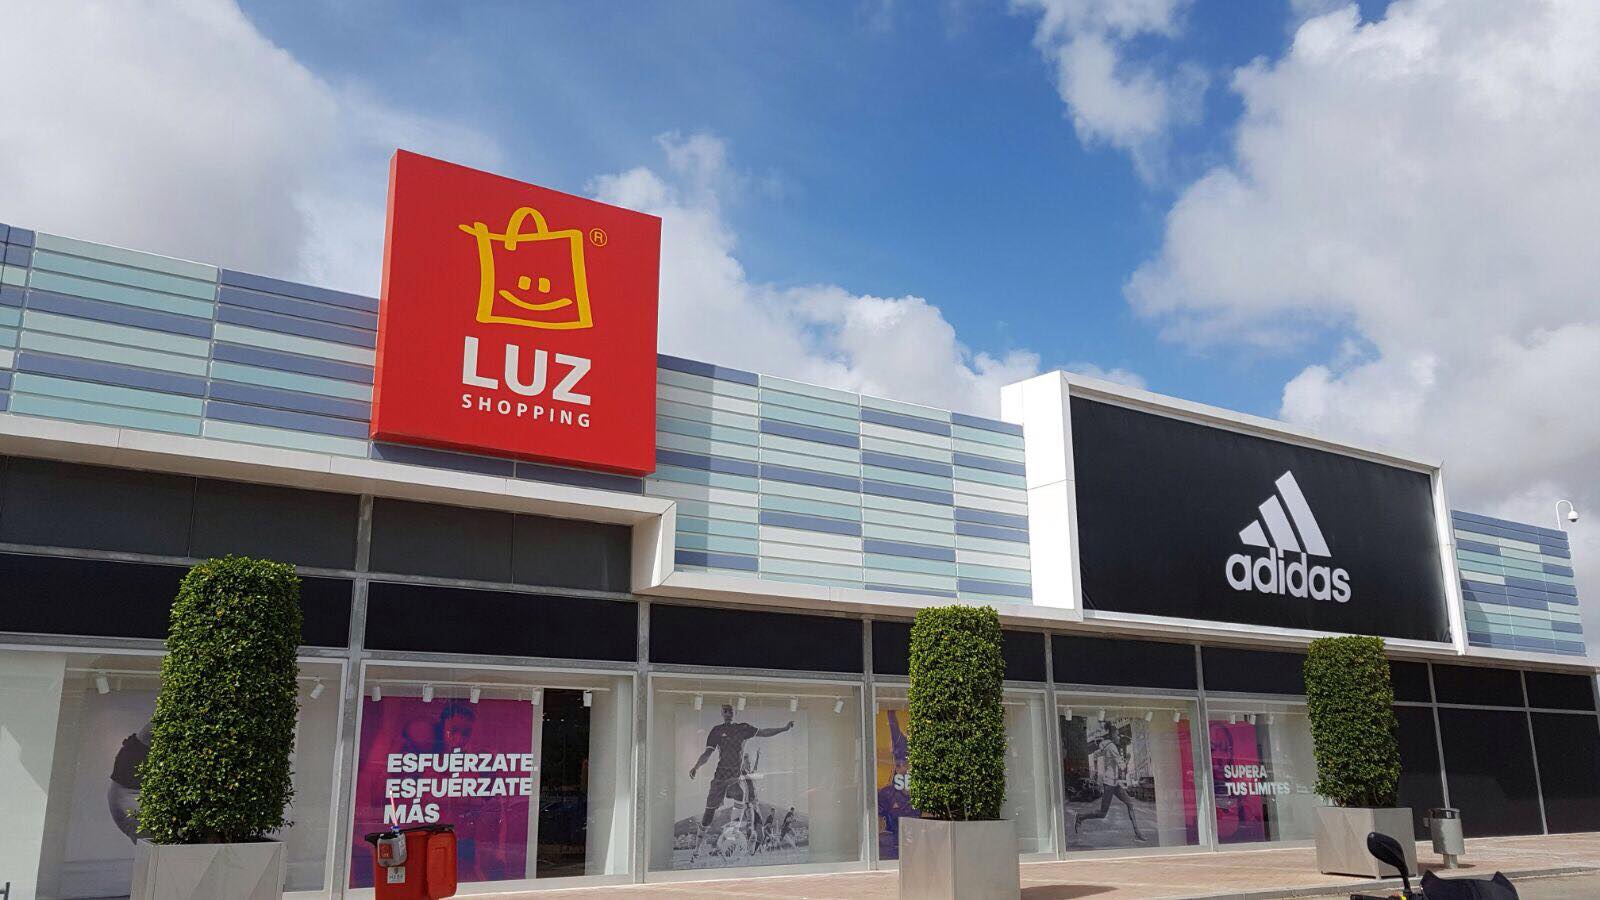 EMPLEO EN JEREZ | Adidas busca vendedores para su tienda de LUZ Shopping en Jerez – Jerez Televisión